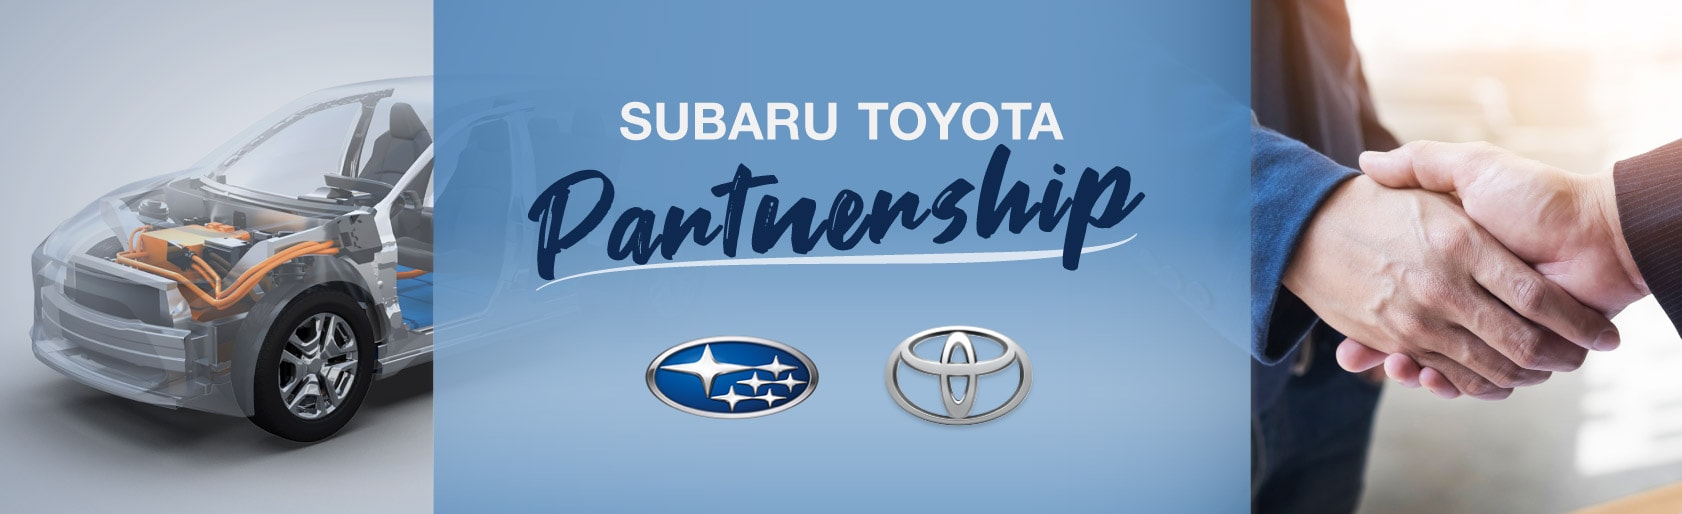 Subaru's Partnership with Toyota